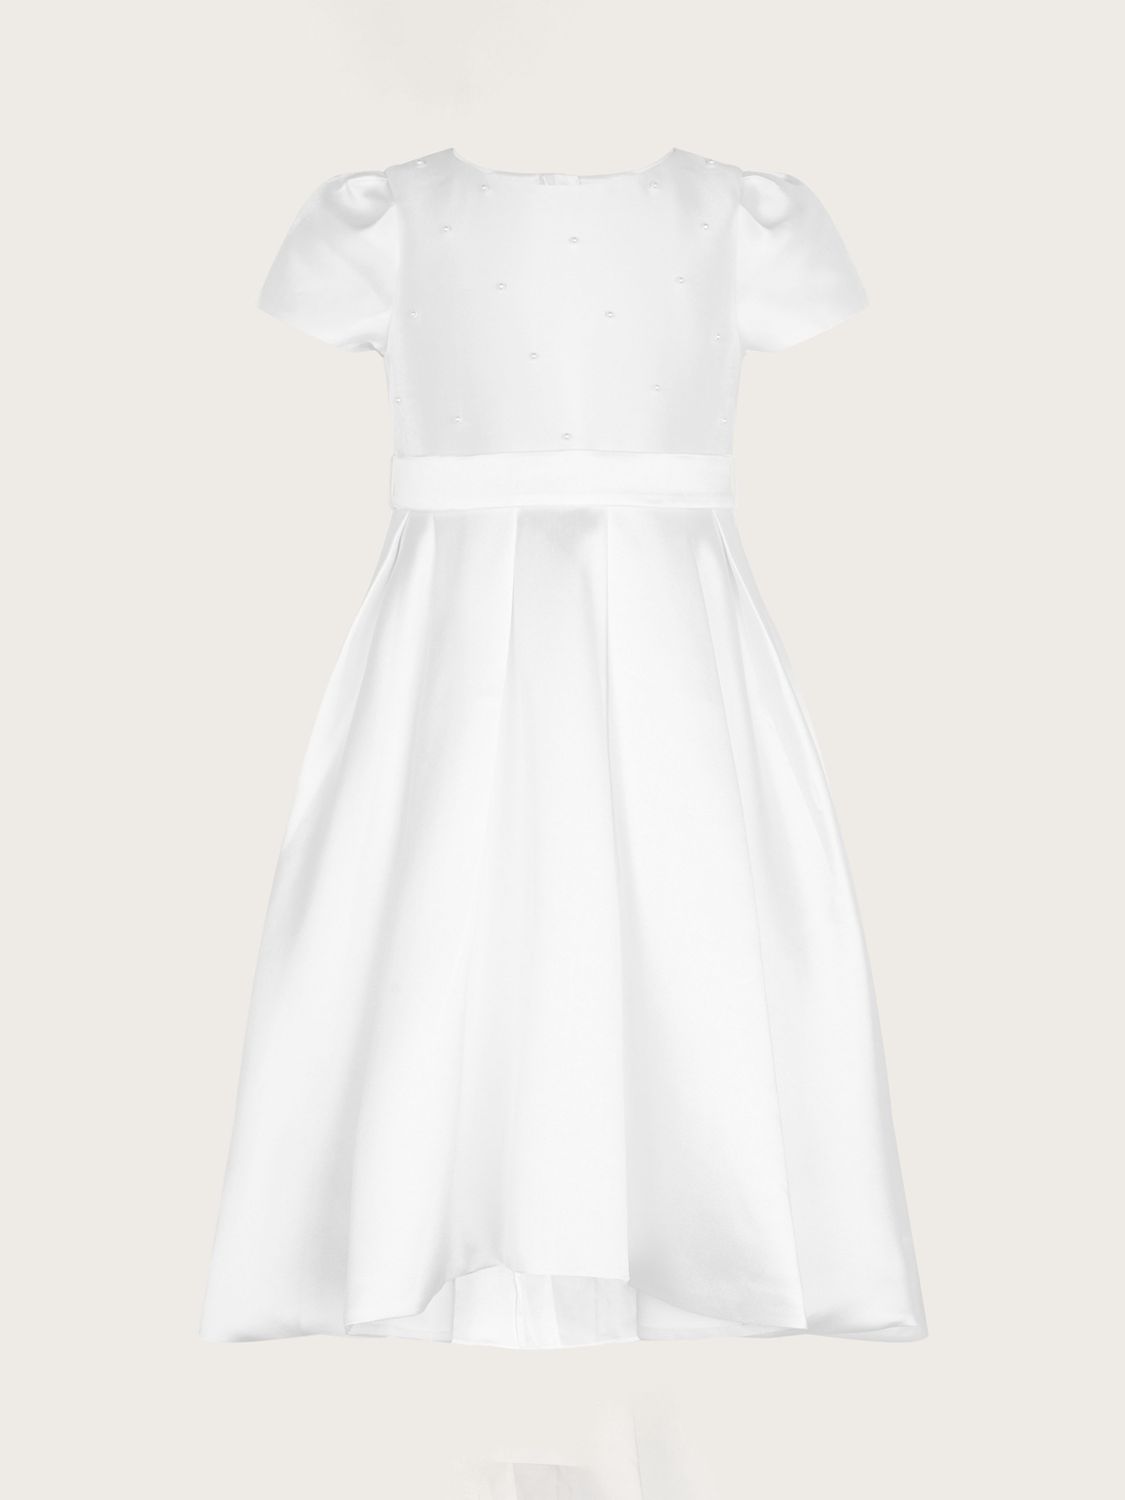 Monsoon Kids' Henrietta Pearl Communion Dress, White, 3 years